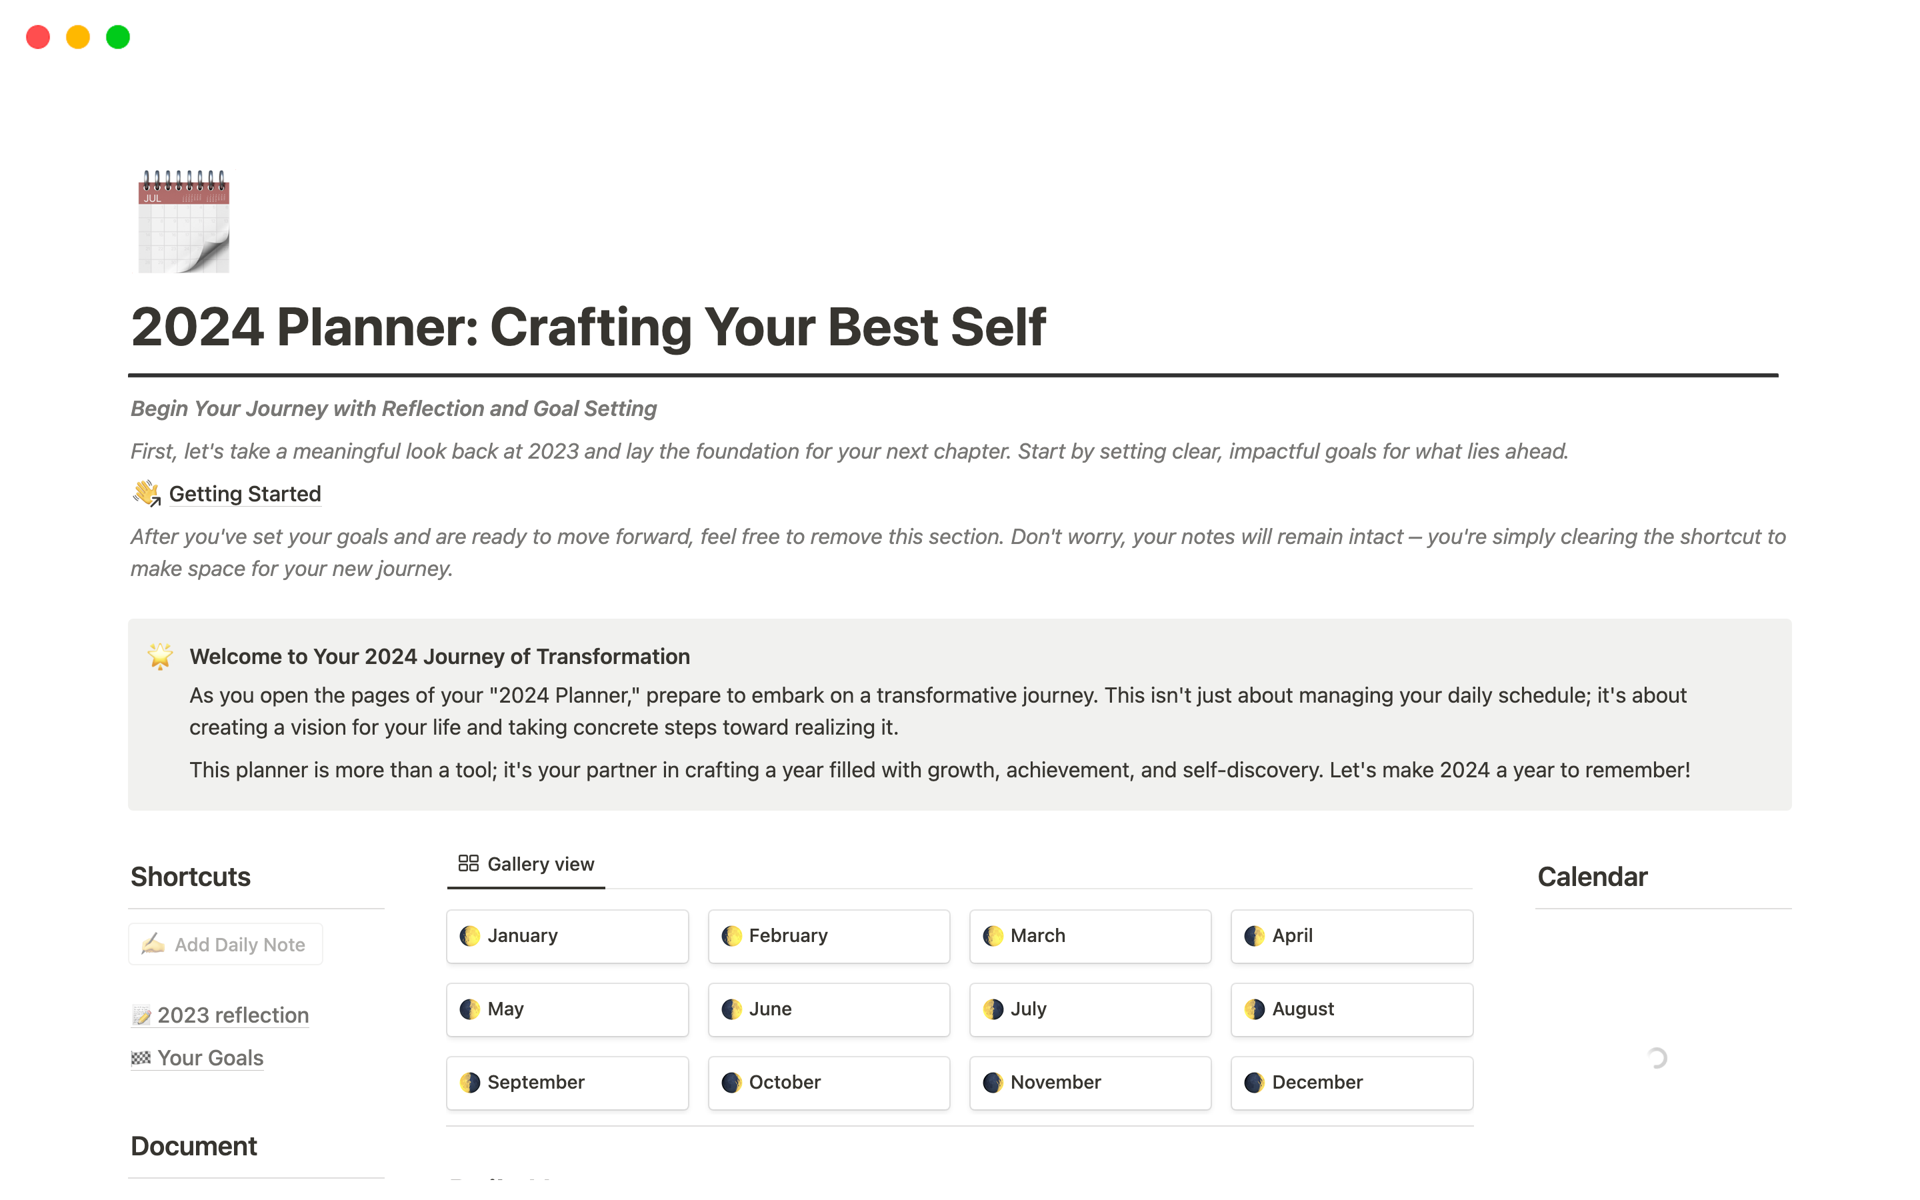 Uma prévia do modelo para 2024 Planner: Crafting Your Best Self